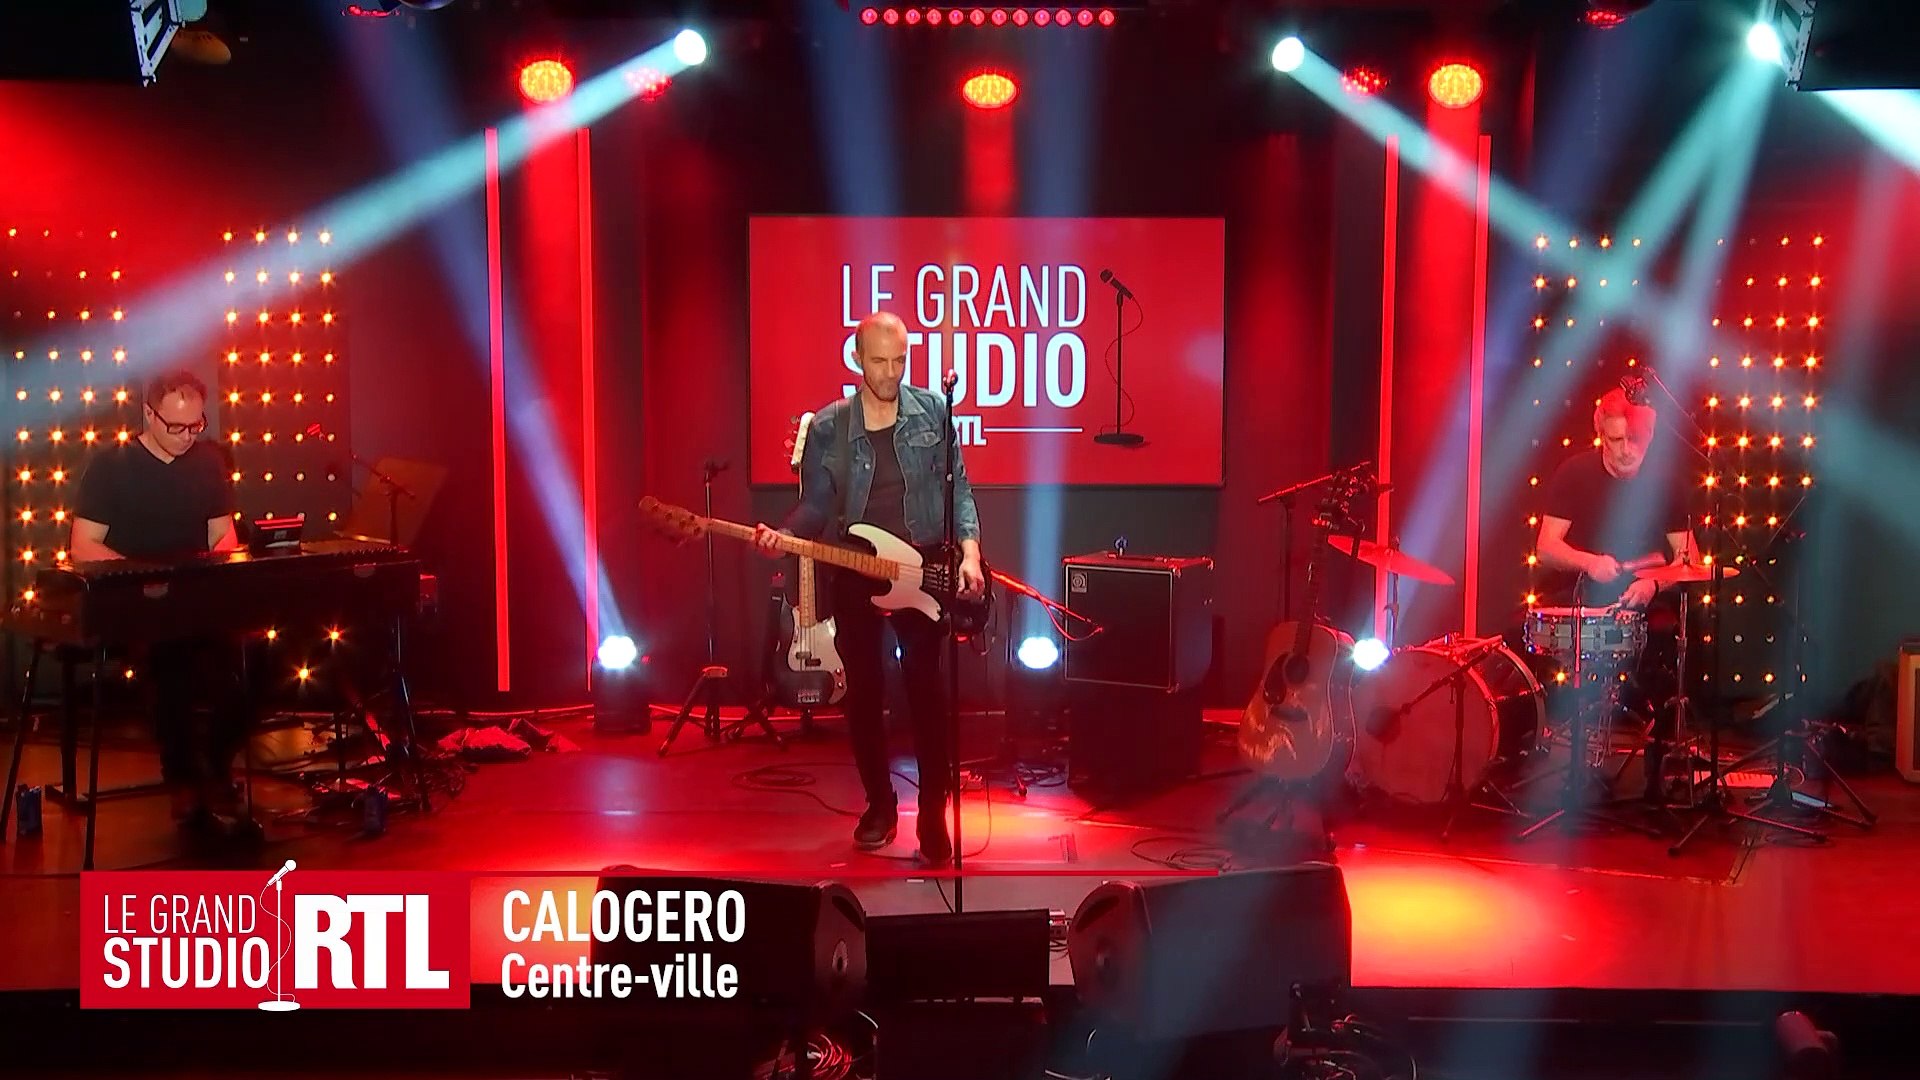 Calogero ouvre les portes de son studio à RTL pour l'album Centre